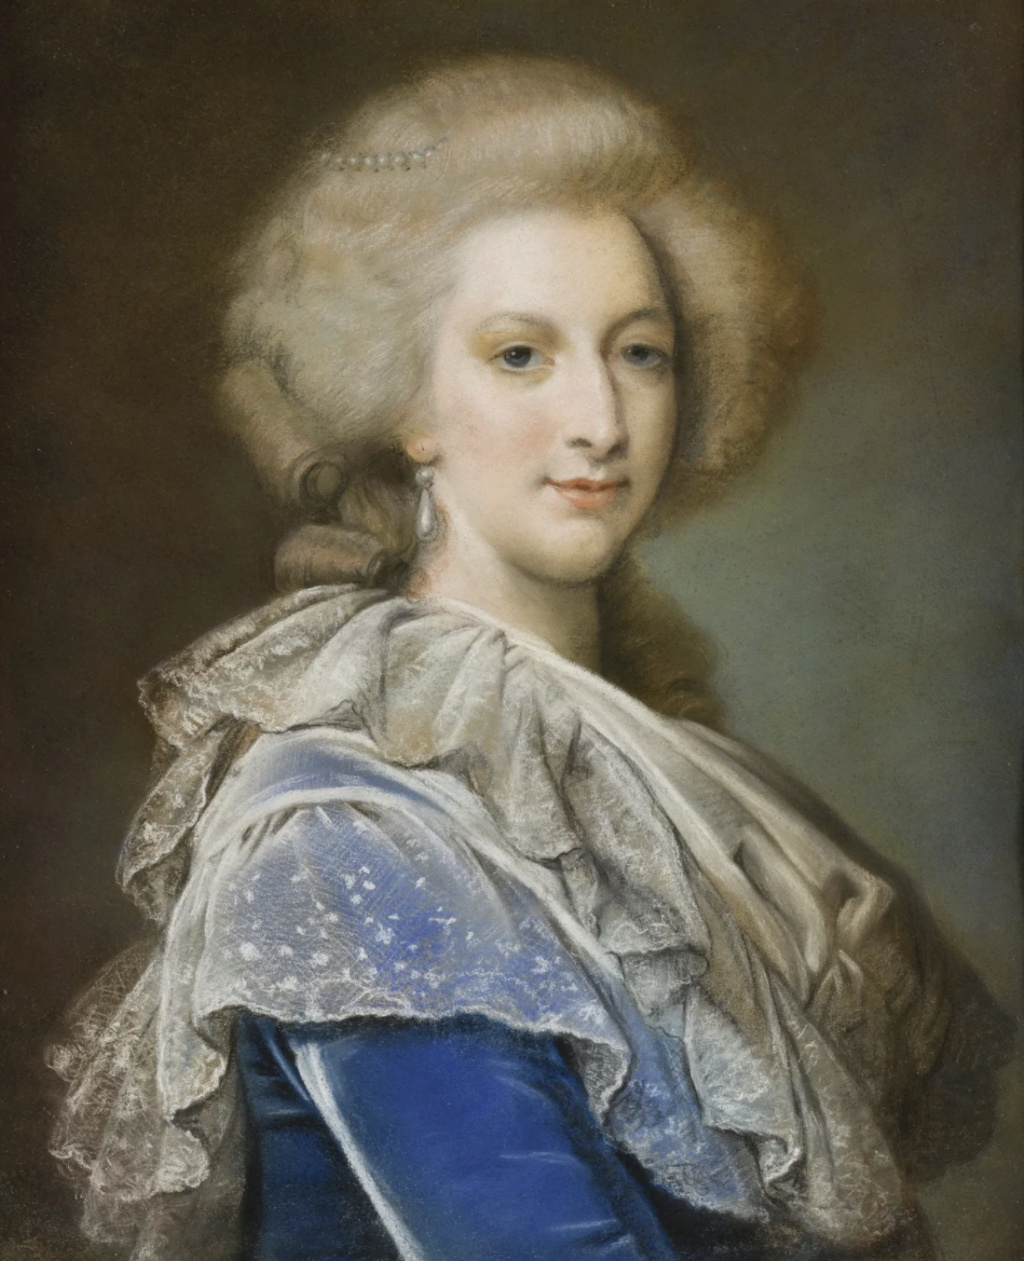 Portraits de Marie-Antoinette d'après Elisabeth Vigée Le Bun ?  - Page 2 Capt3294